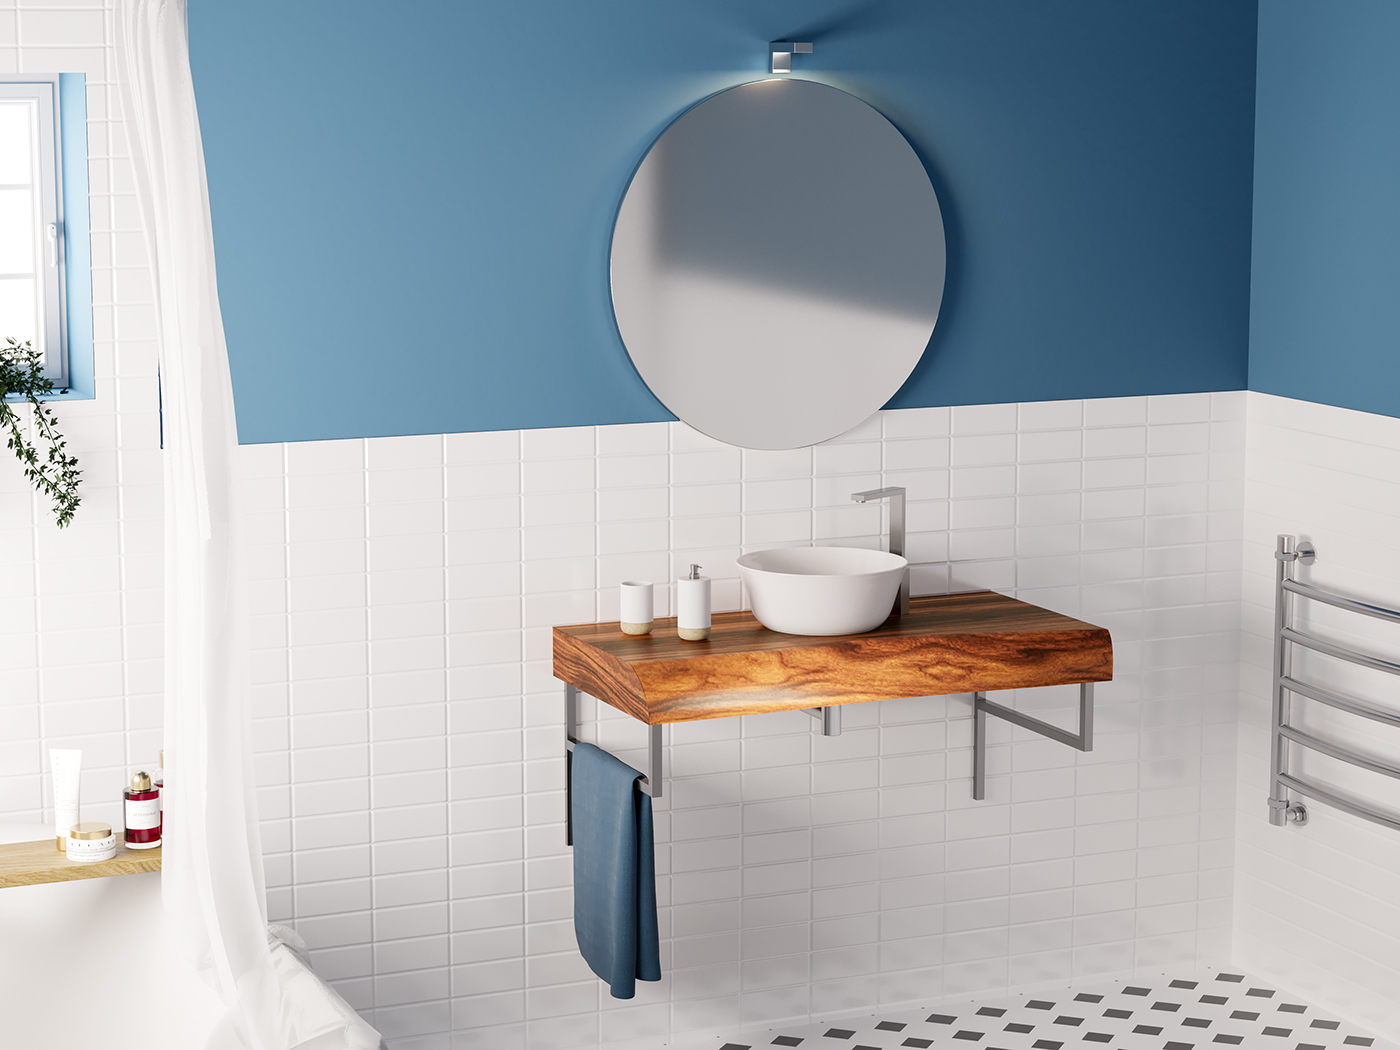 furniture design  interior design  wood bath bathroom architecture CGI photorealism Render c4d